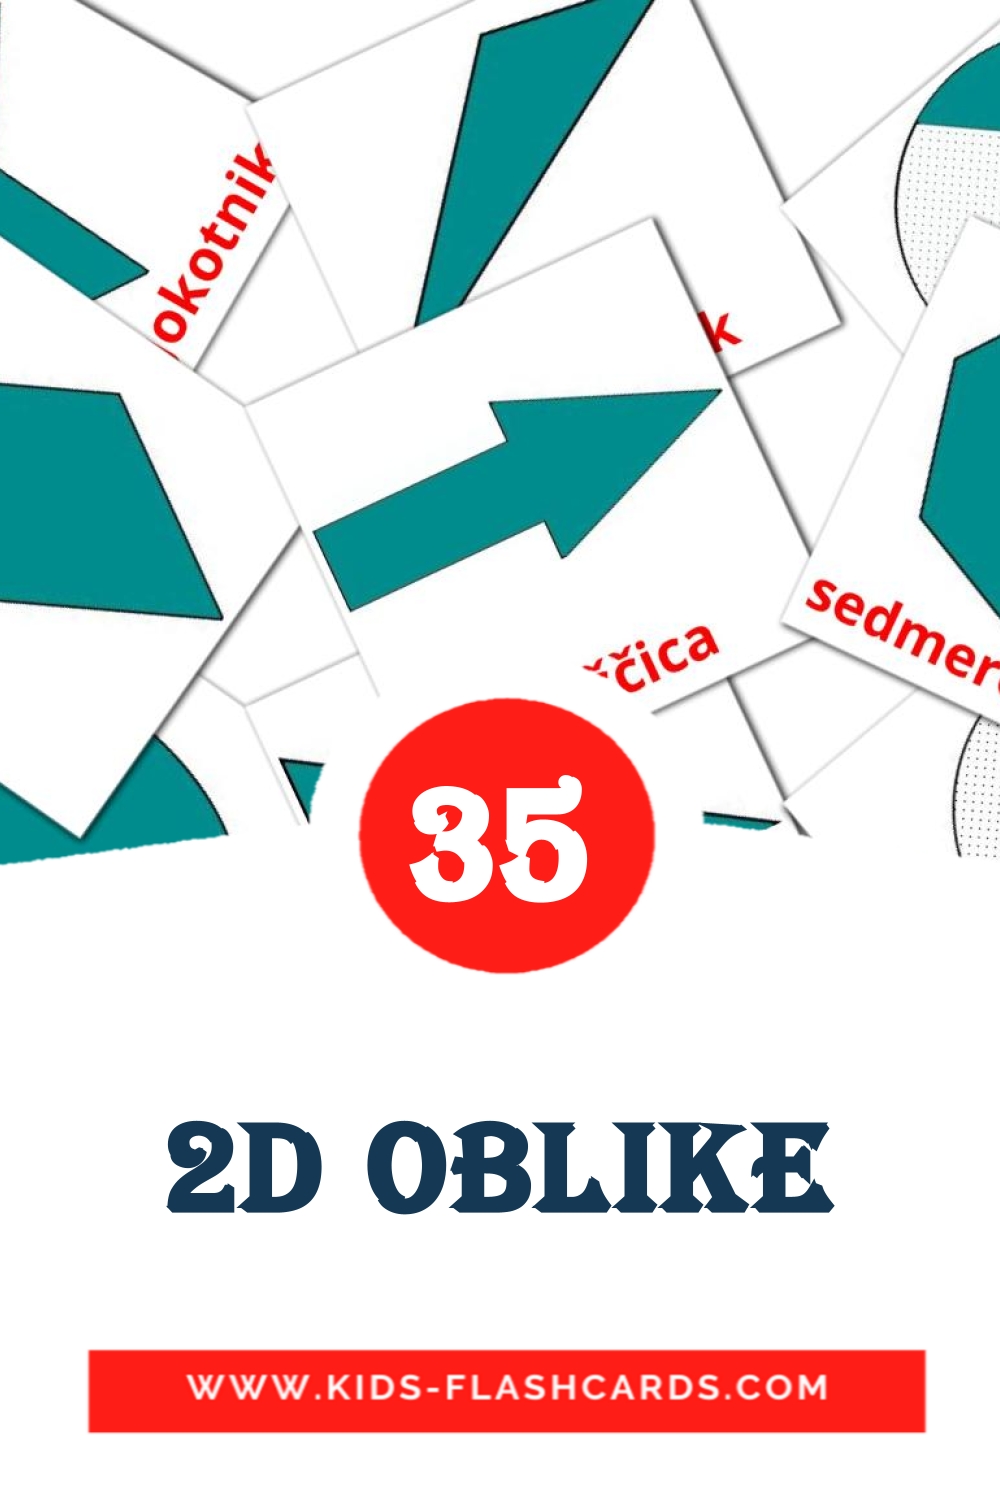 35 Cartões com Imagens de 2D oblike para Jardim de Infância em slovenian